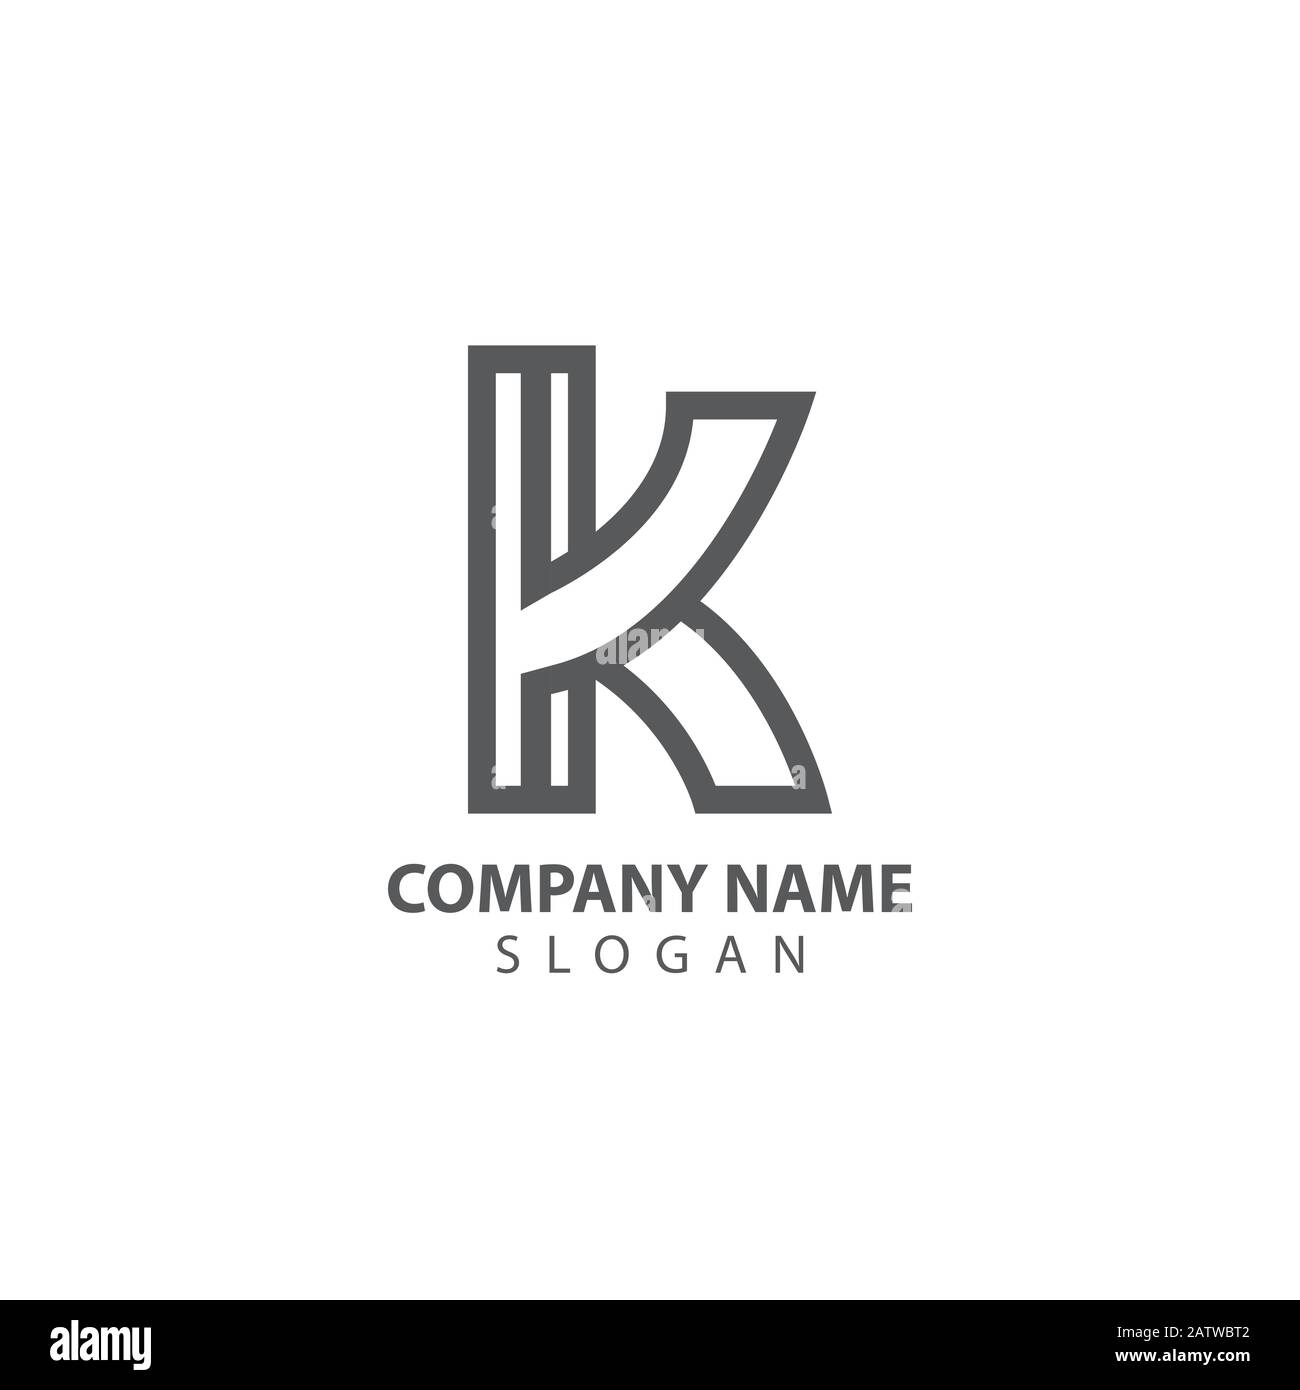 K Letter Logo Konzept. Vorlage für kreatives Design Mit Minimalem Emblem. Elegante Universalsymbole. Firmenlogo für Premium-Finanzierungen. Grafisches Alphabet Symbol für Stock Vektor